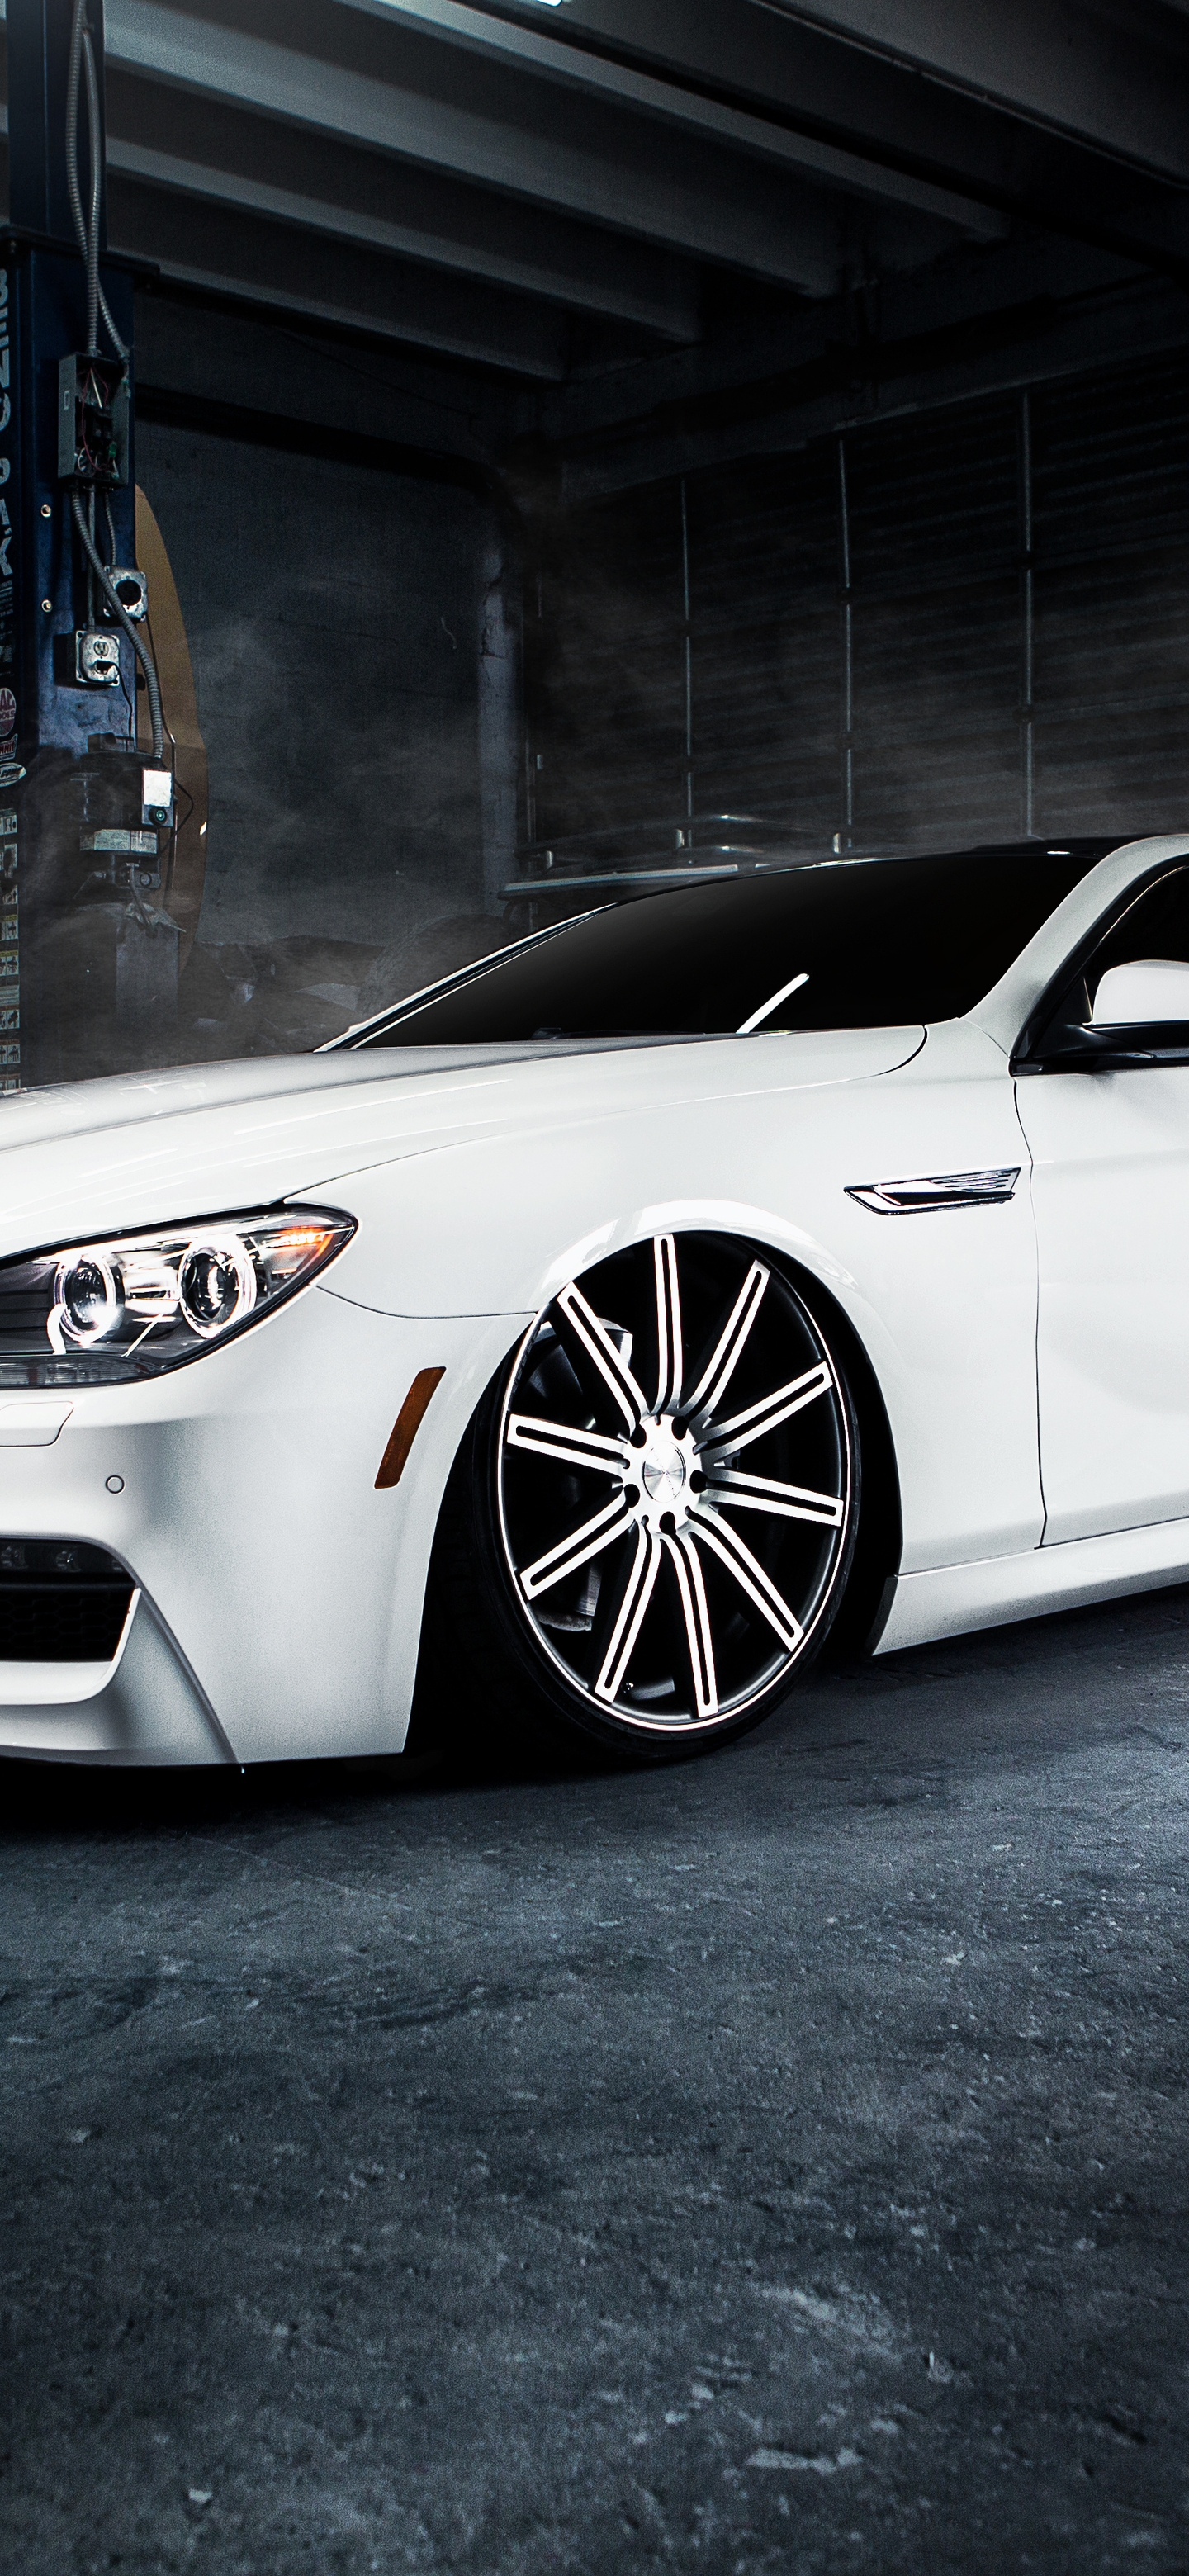 Картинка: BMW, m6, белый, низкий профиль, посадка, гараж, мастерская